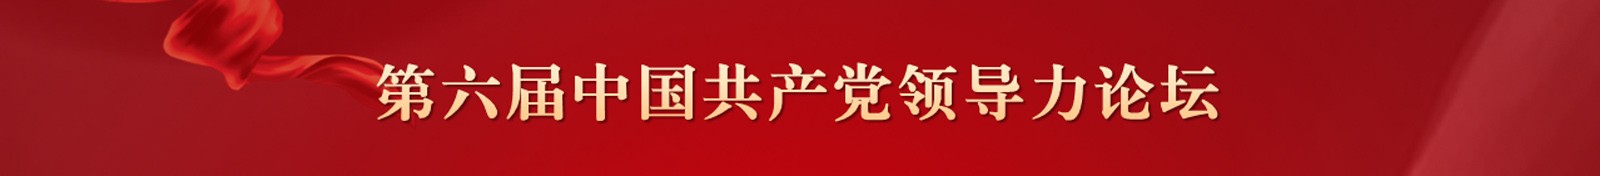 中国共产党领导力论坛在山东临沂举行